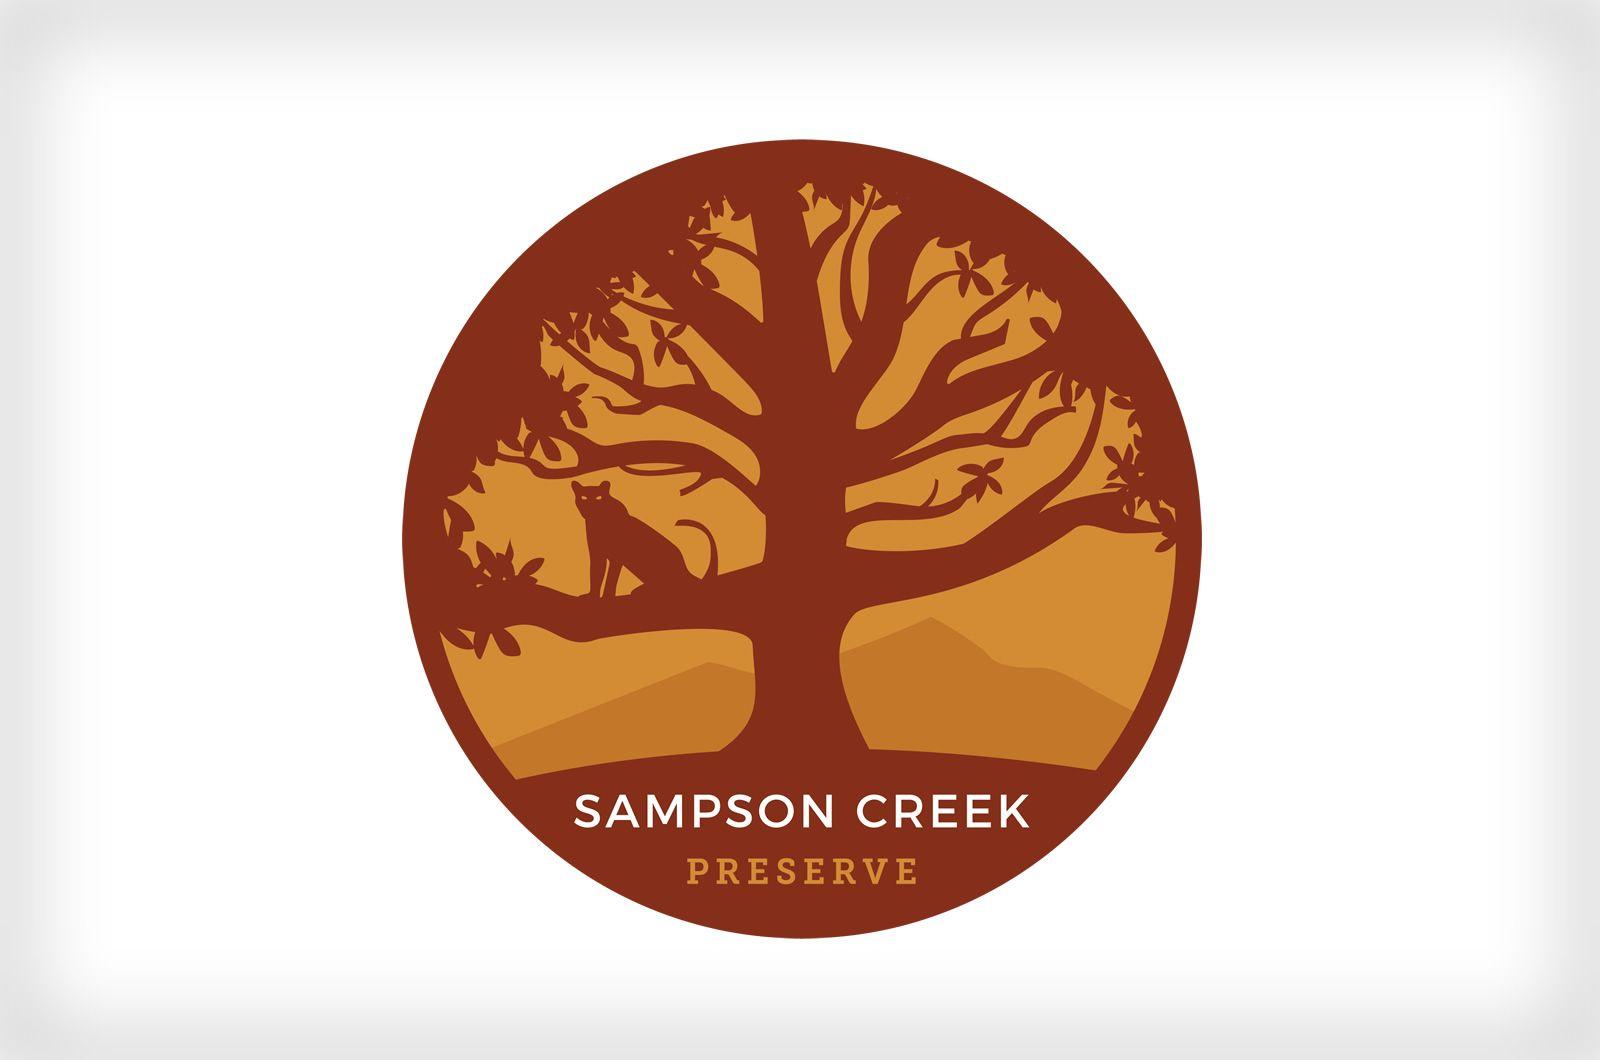 Preserve Logo - Sampson Creek Preserve Logo. Ruby Slipper Designs